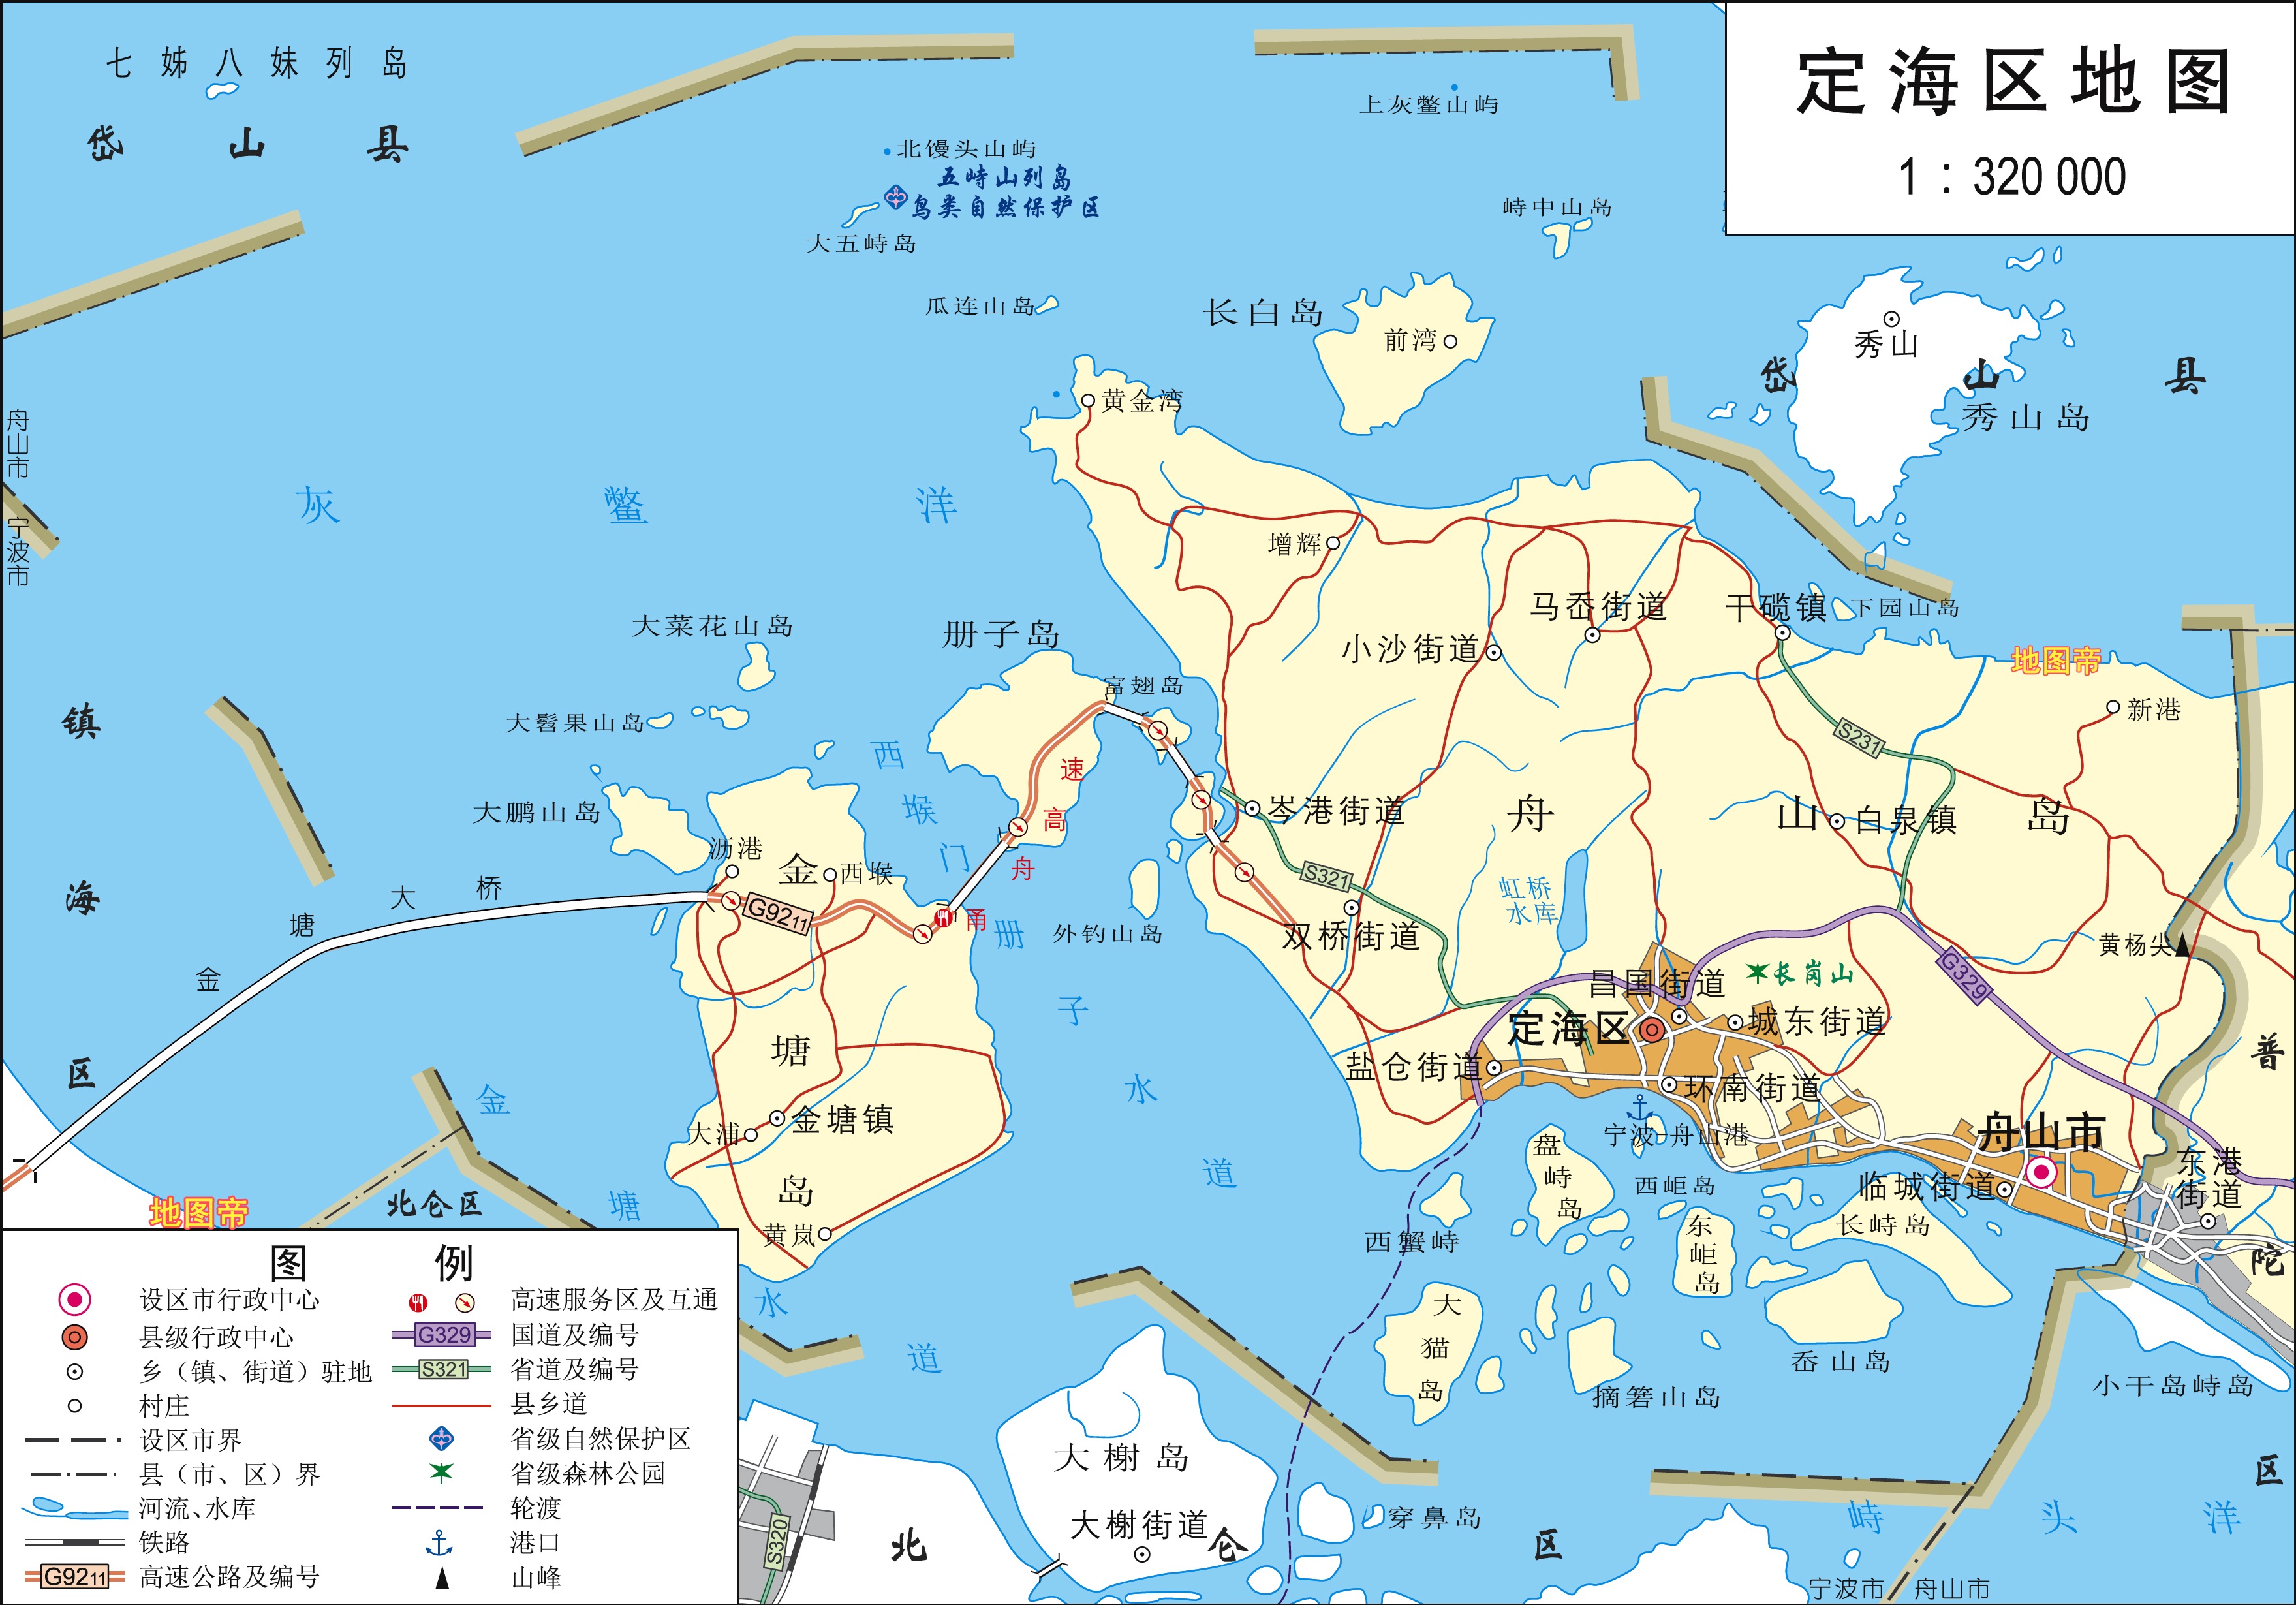 舟山市高清地图,浙江陆地面积最小地级市